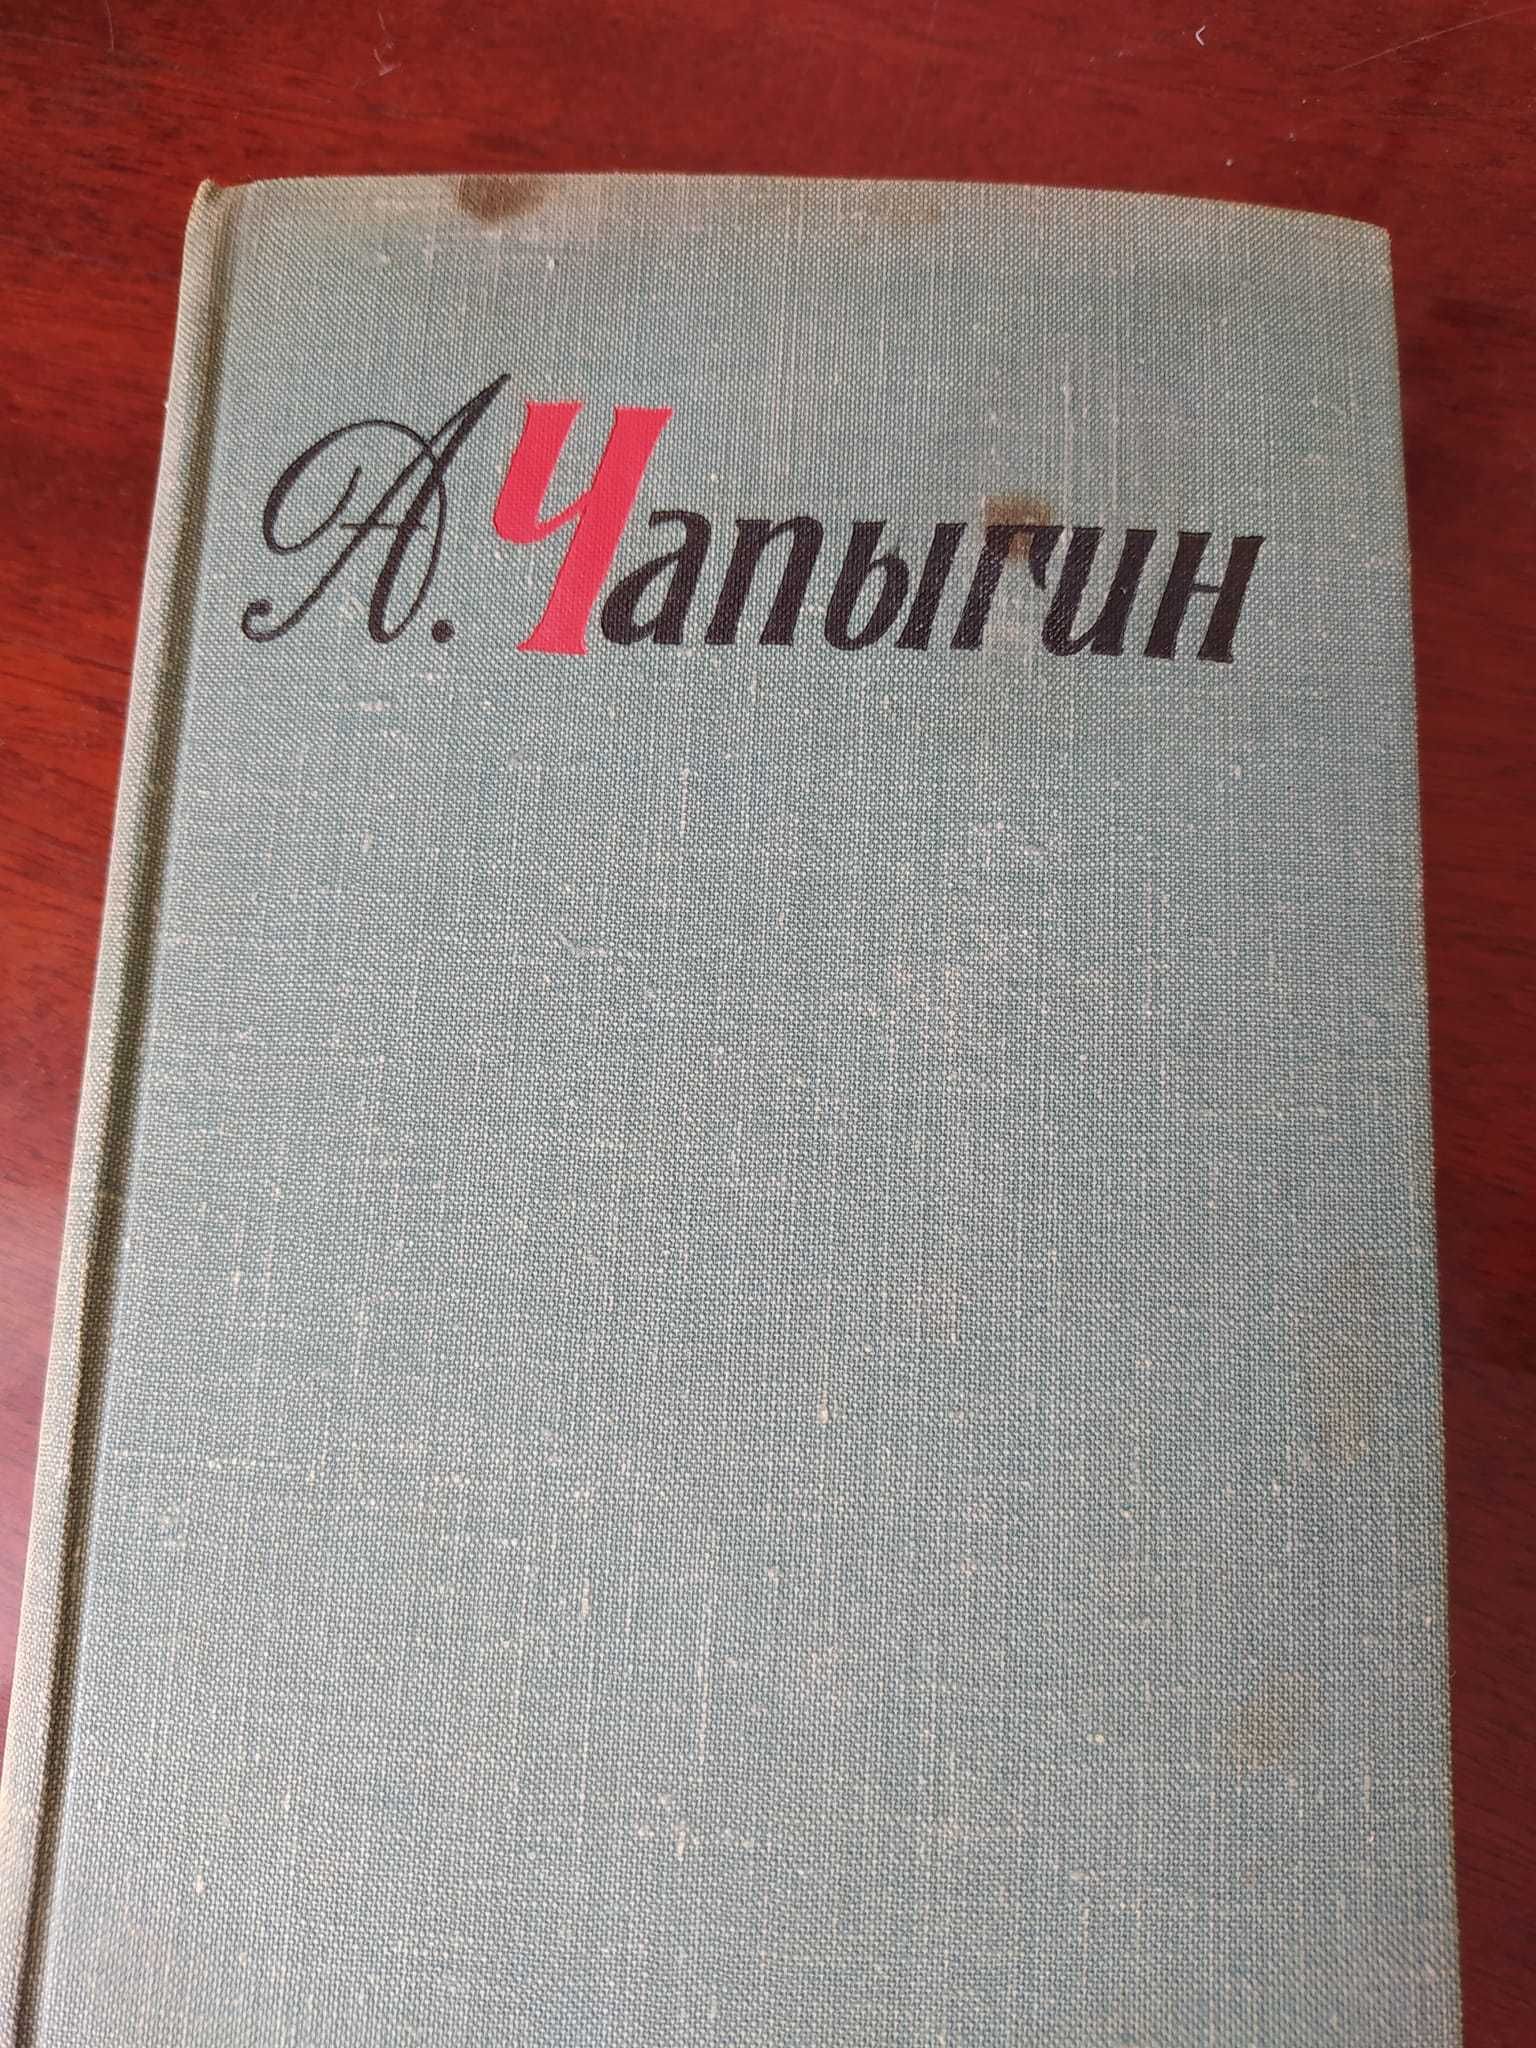 Чапыгин А. Собрание сочинений в 5 томах